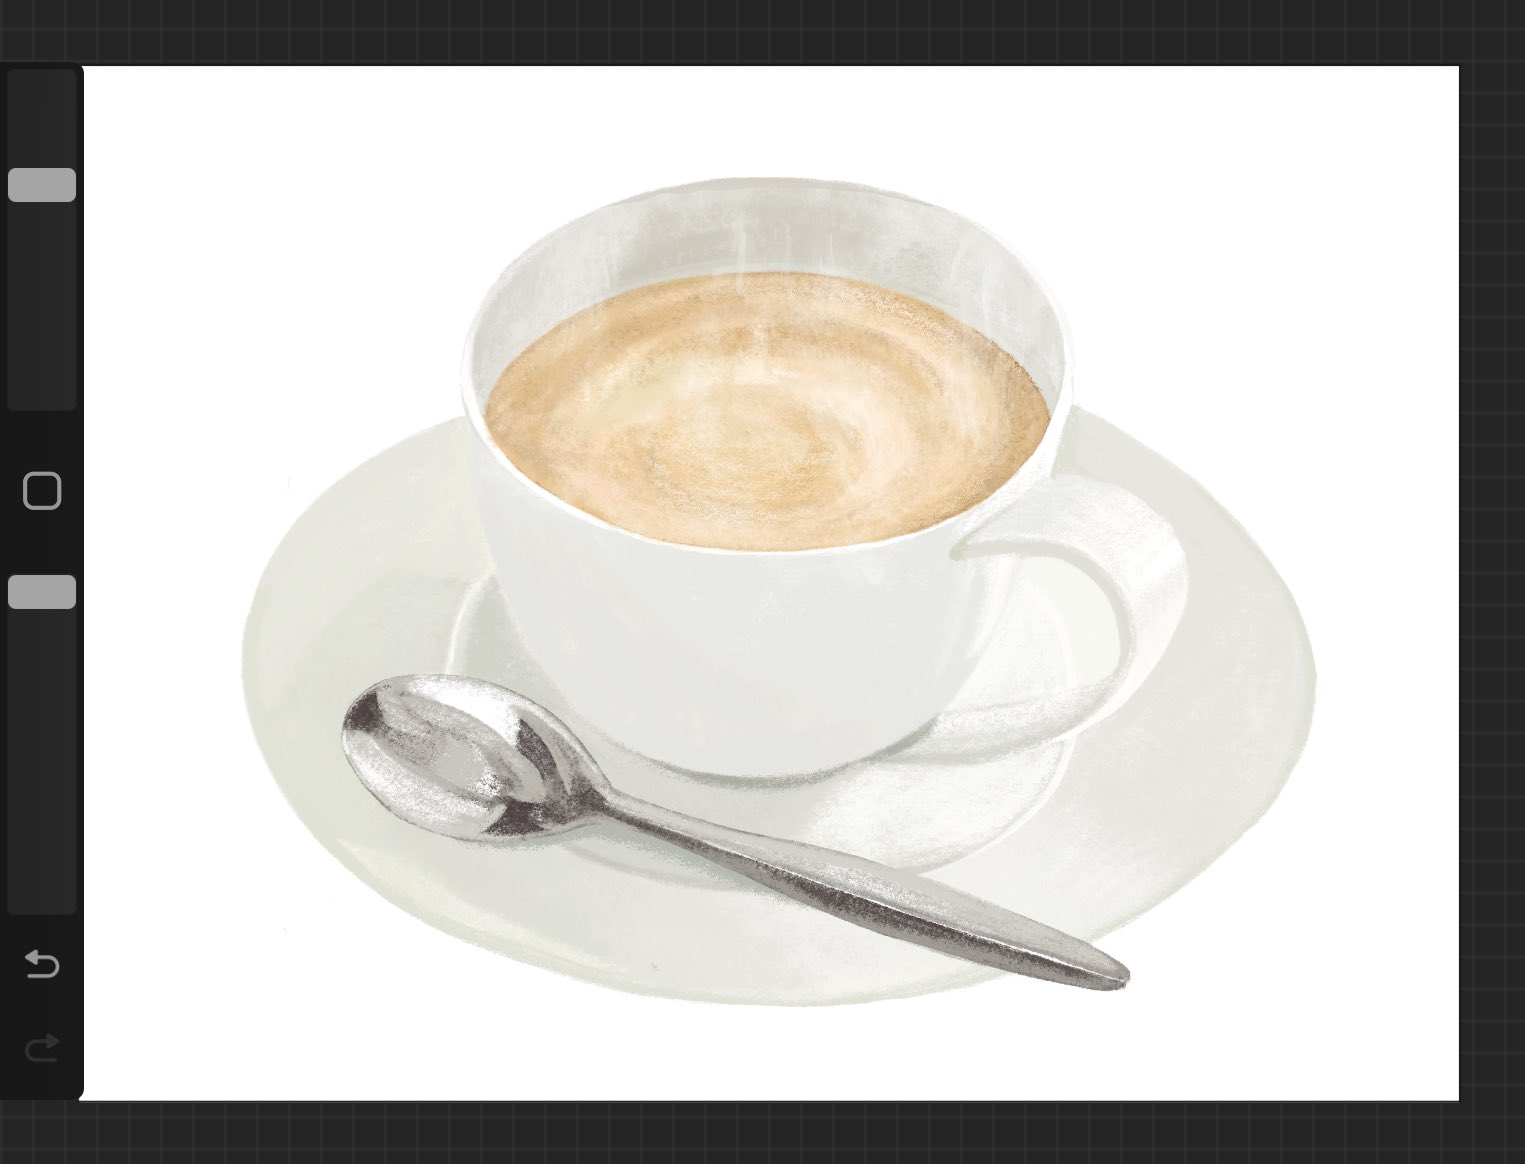 あすなろ 挿絵店 カフェオレのイラスト を描きました ドリップコーヒーに牛乳を同量程度入れるのがカフェオレ エスプレッソコーヒーに対して牛乳を1対4で入れるのがカフェラテだよ イラスト カフェオレ カフェラテ T Co Rcd1yzlxk3 Twitter